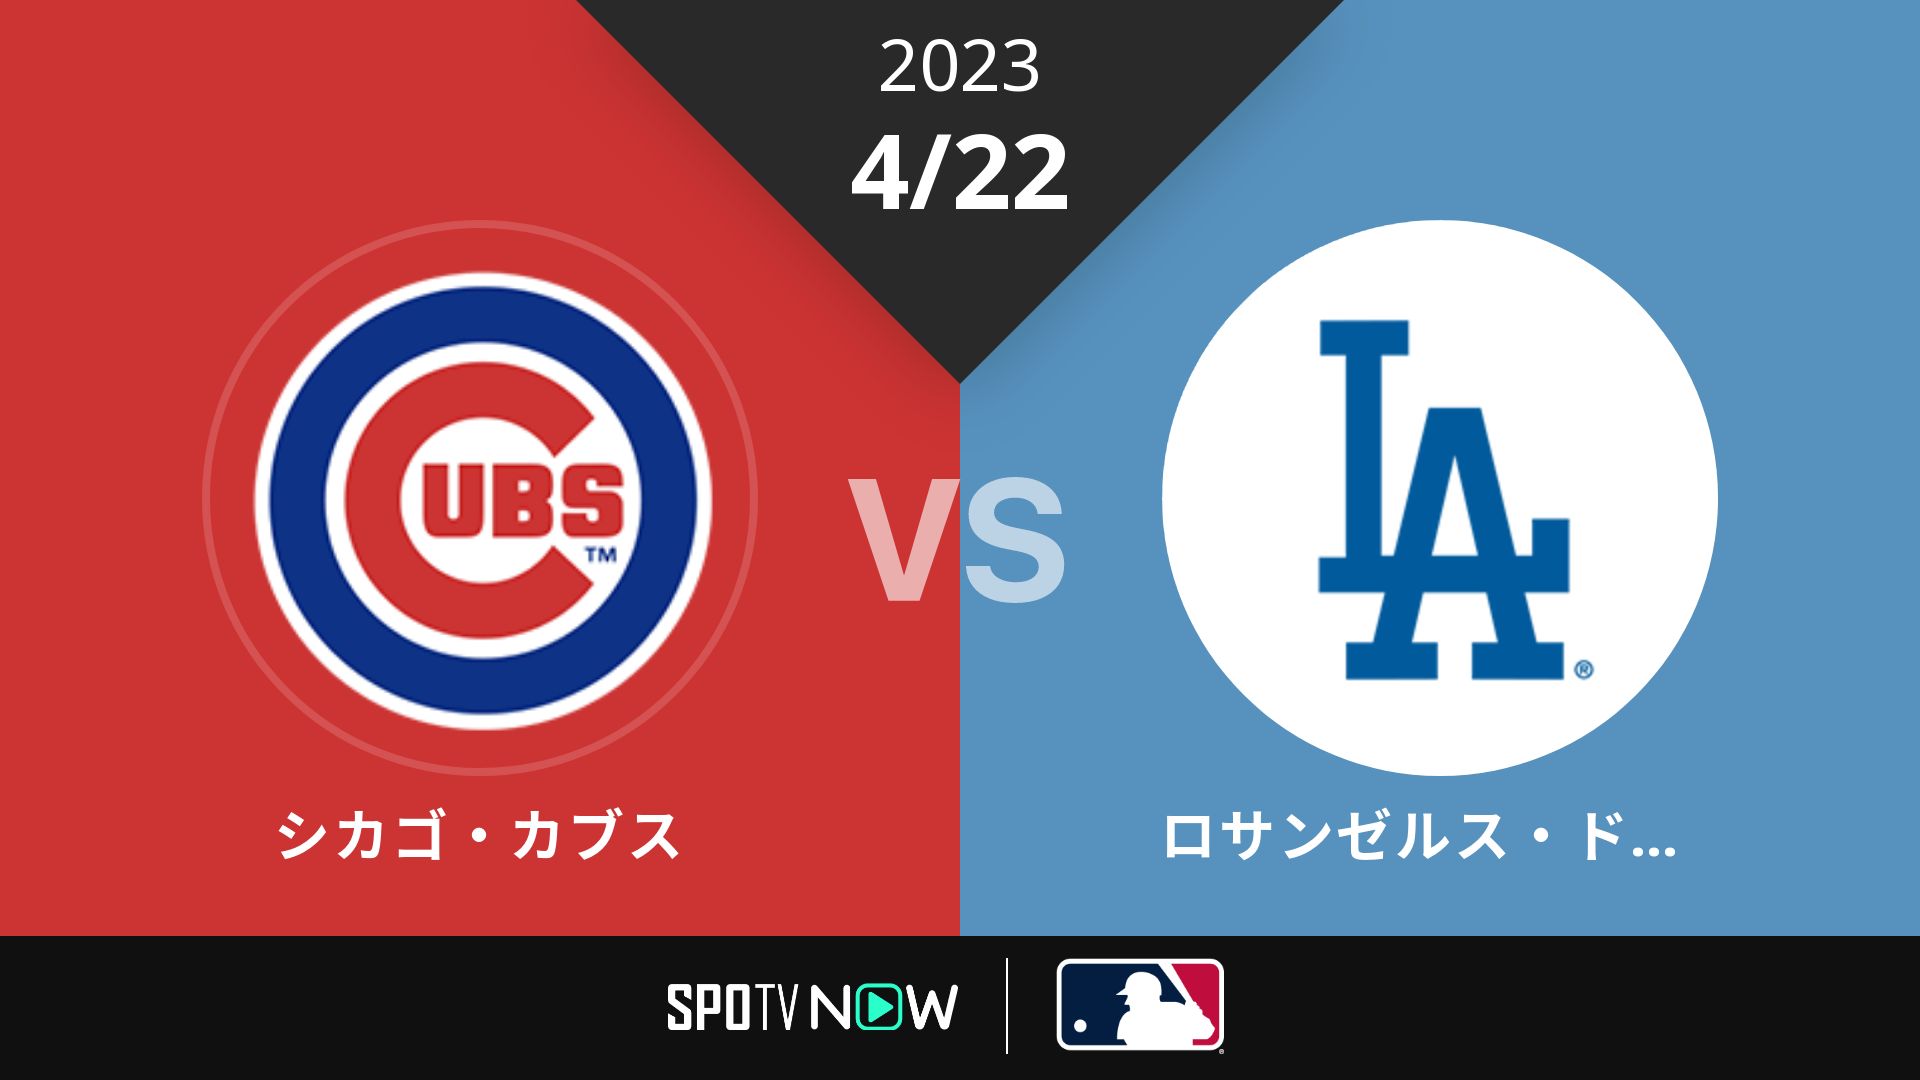 2023/4/22 カブス vs ドジャース [MLB]